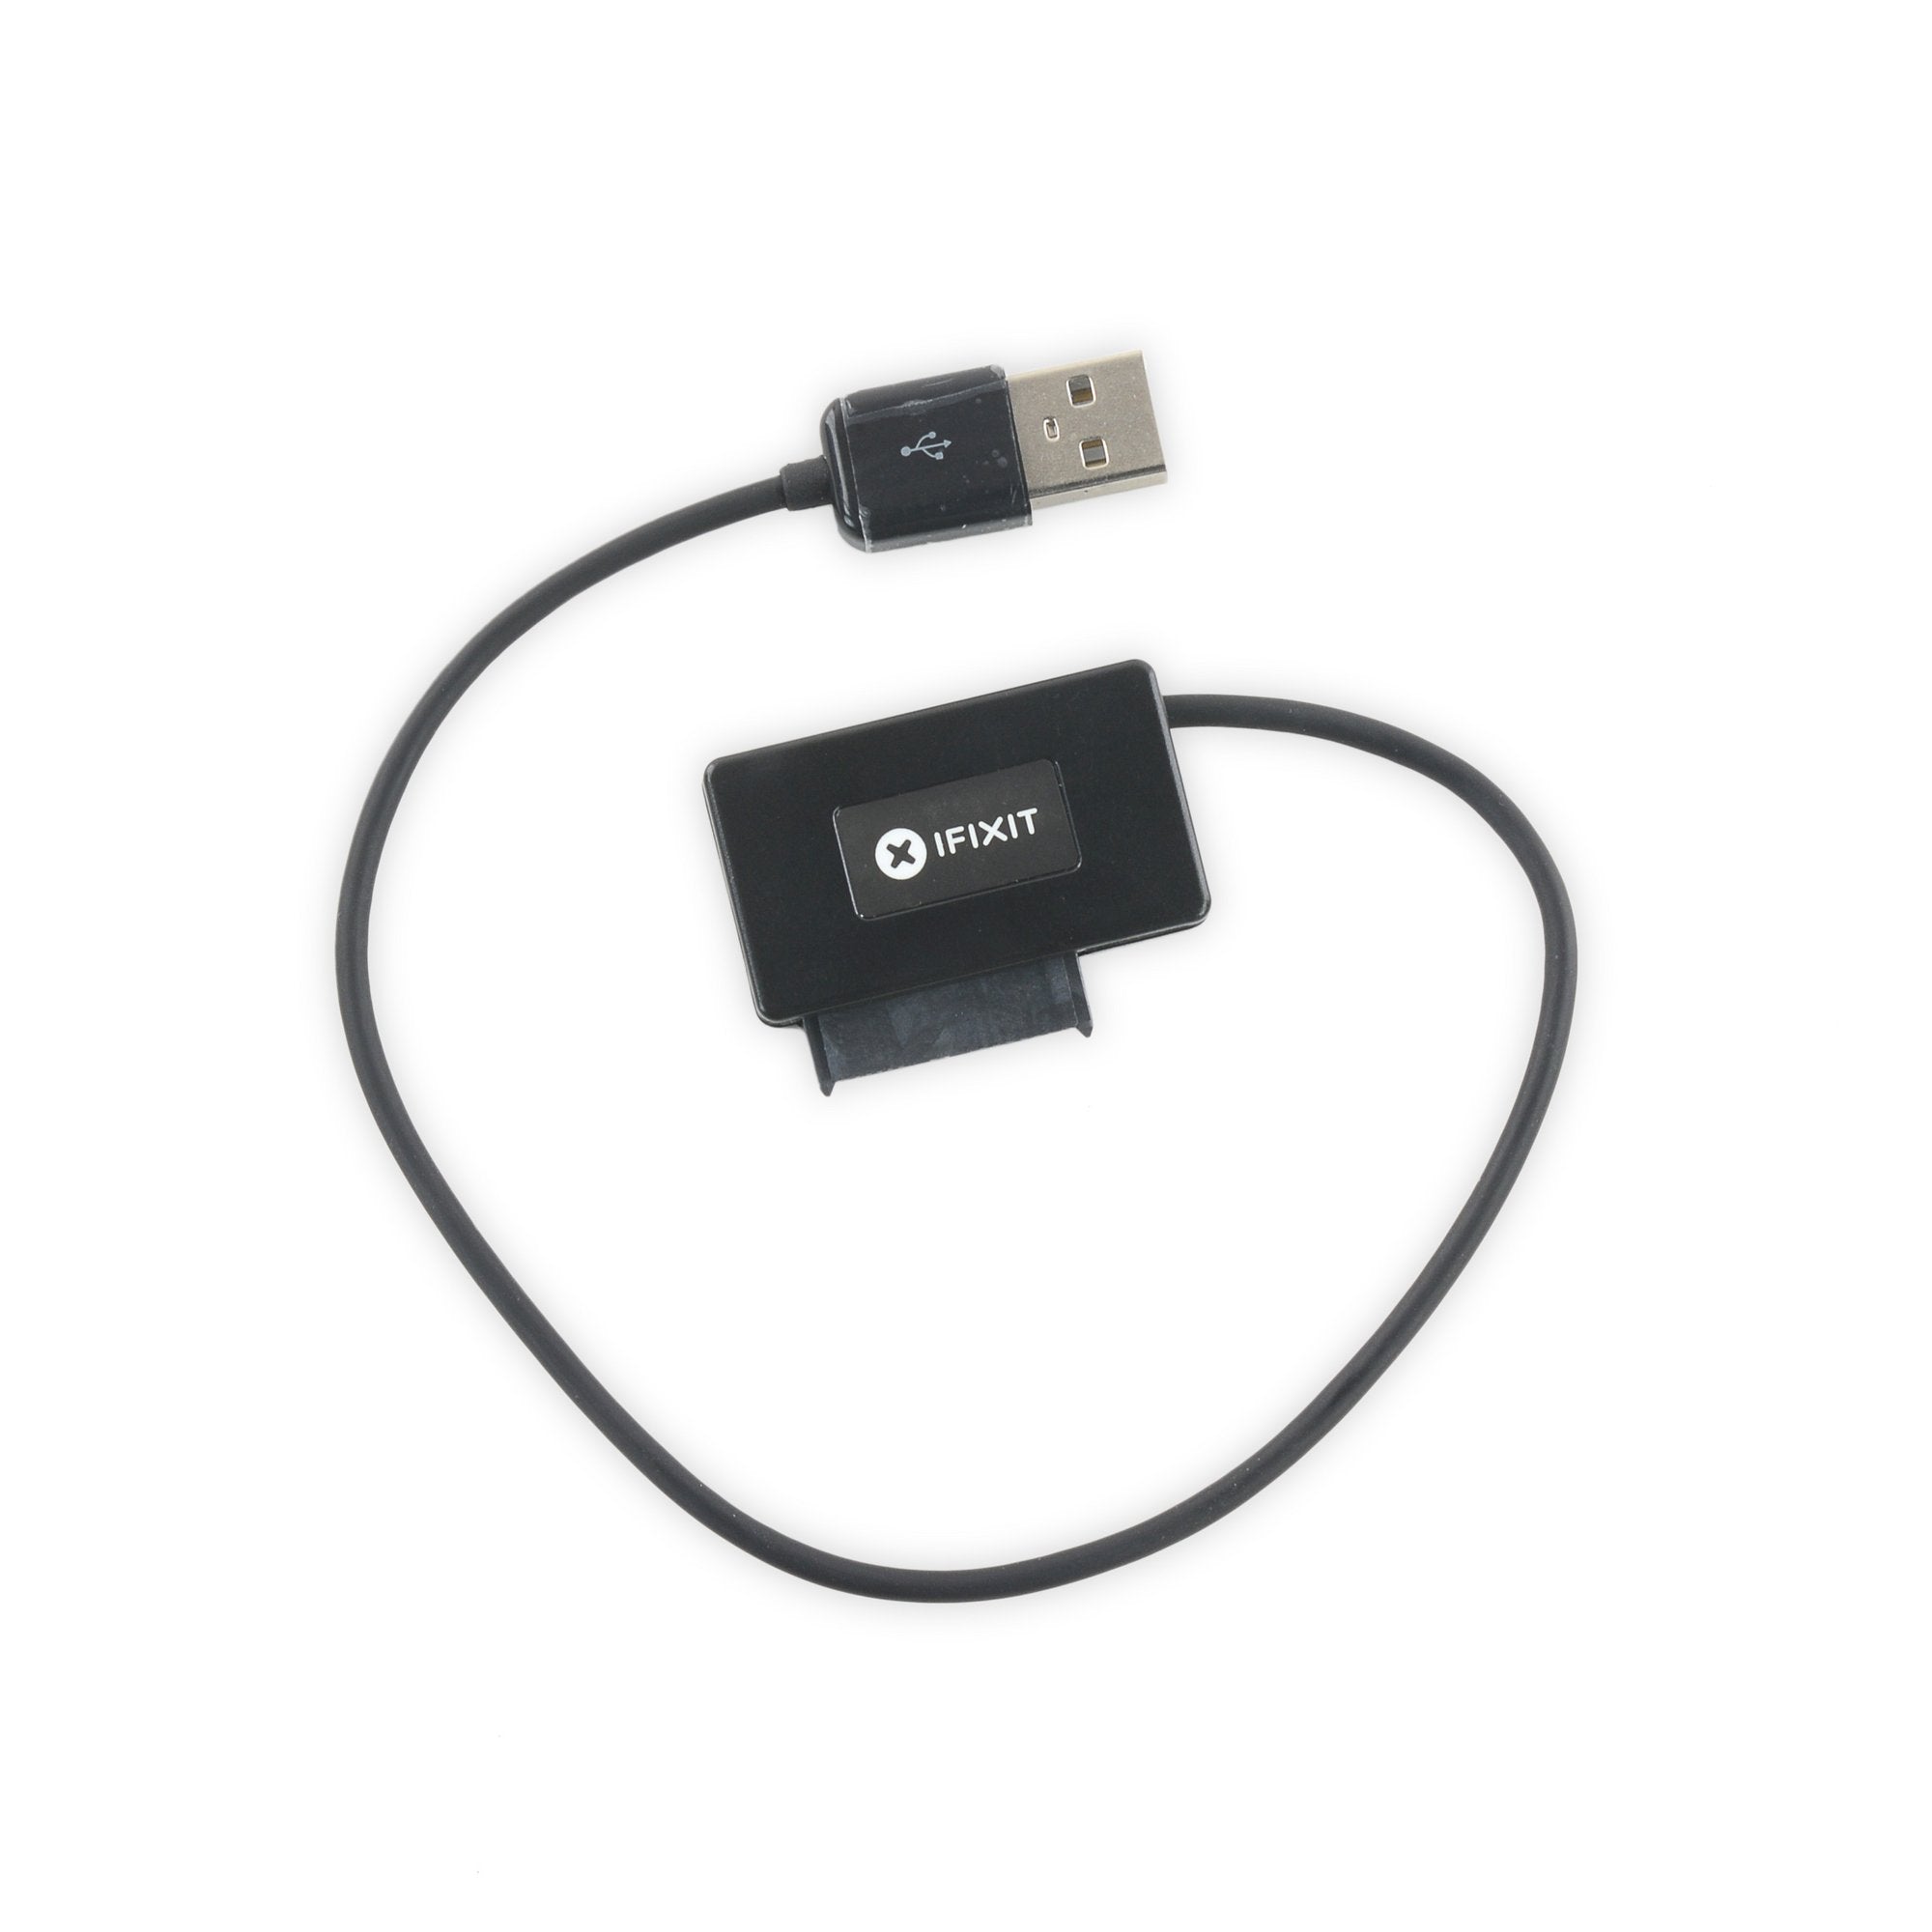 SATA Optical Drive USB Cable